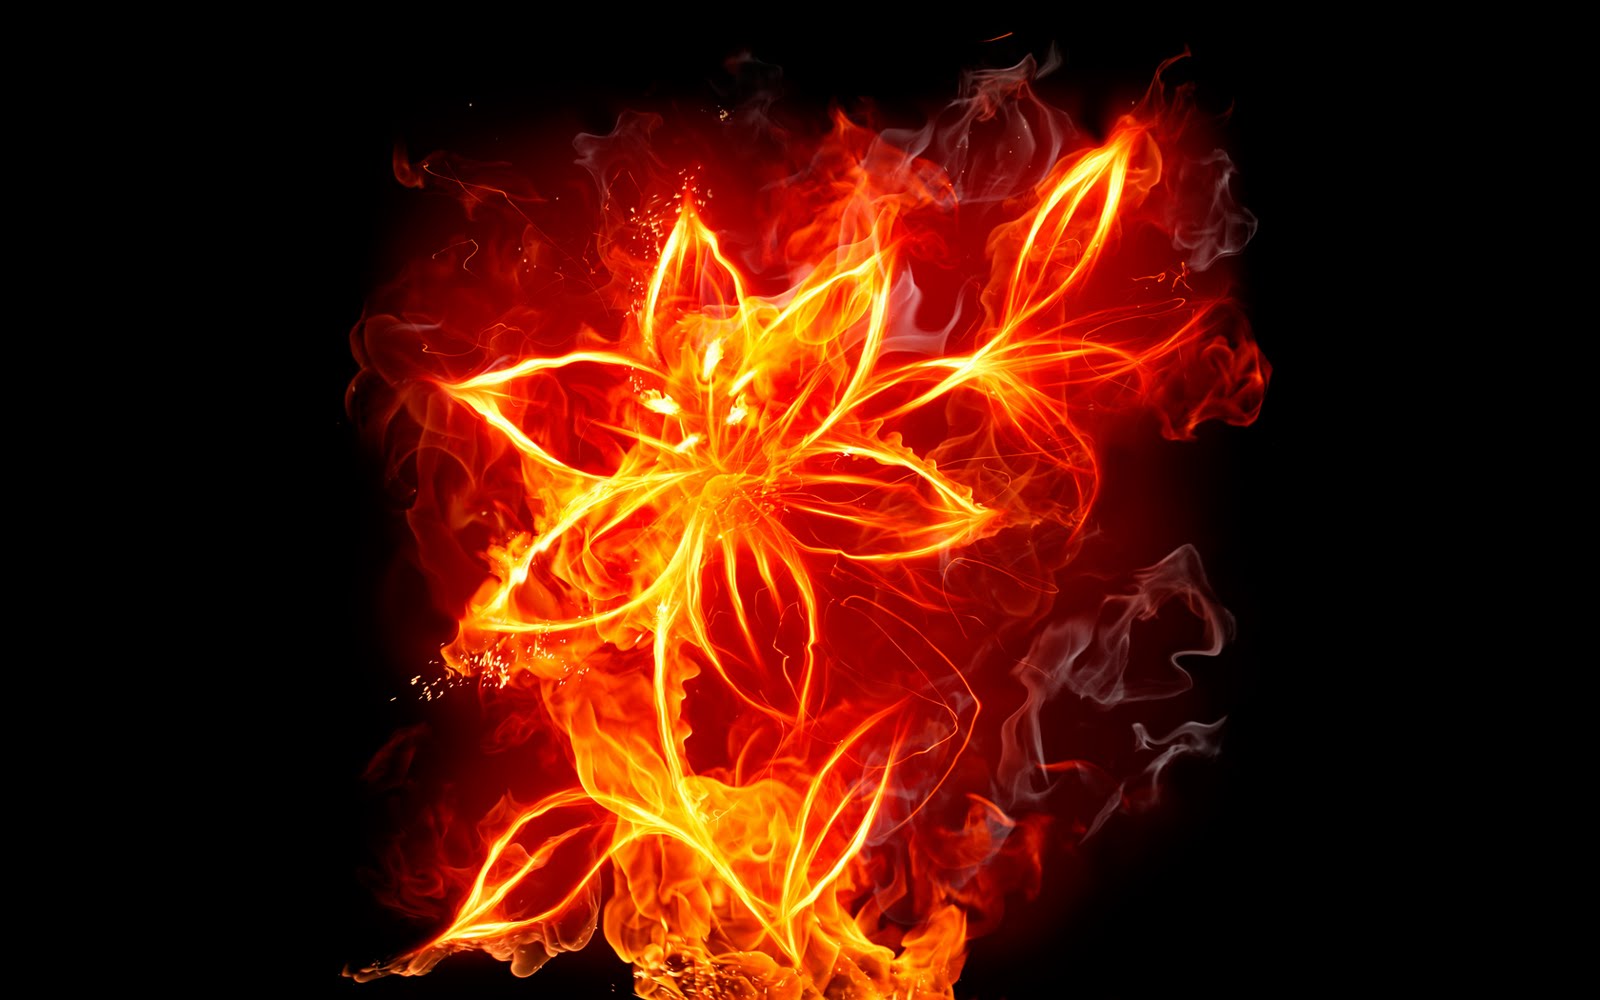 http://3.bp.blogspot.com/-Ynp0Q5Ahqko/TjOMlRfeTvI/AAAAAAAAANc/HafptgUxfm0/s1600/Flower_Fire_Wallpaper.jpg